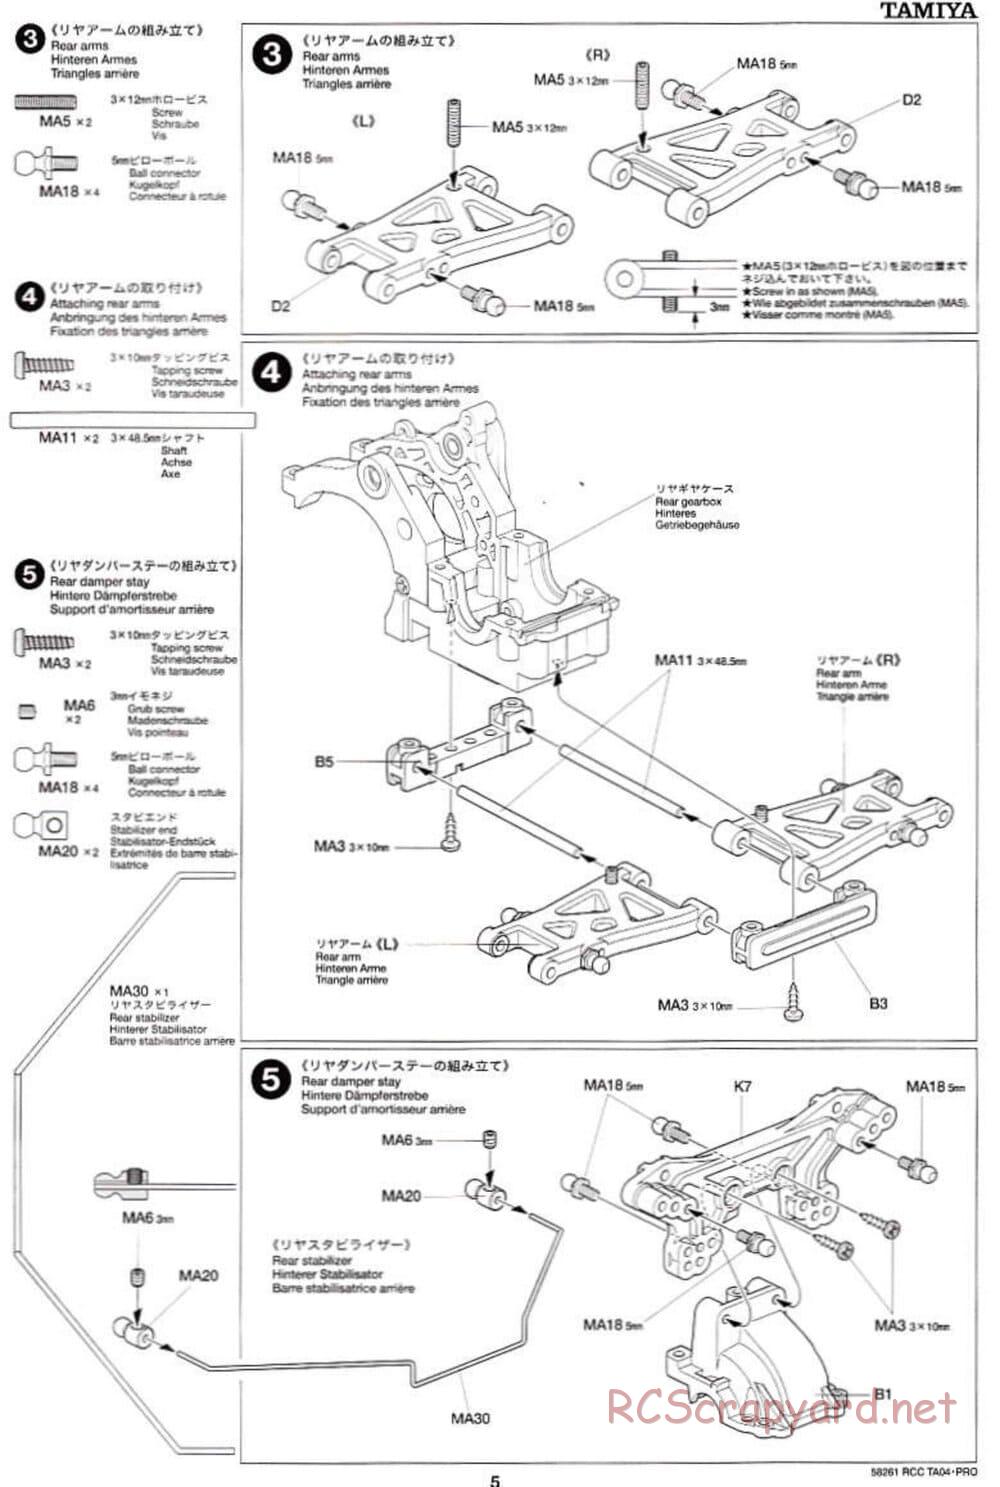 Tamiya - TA-04 Pro Chassis - Manual - Page 5